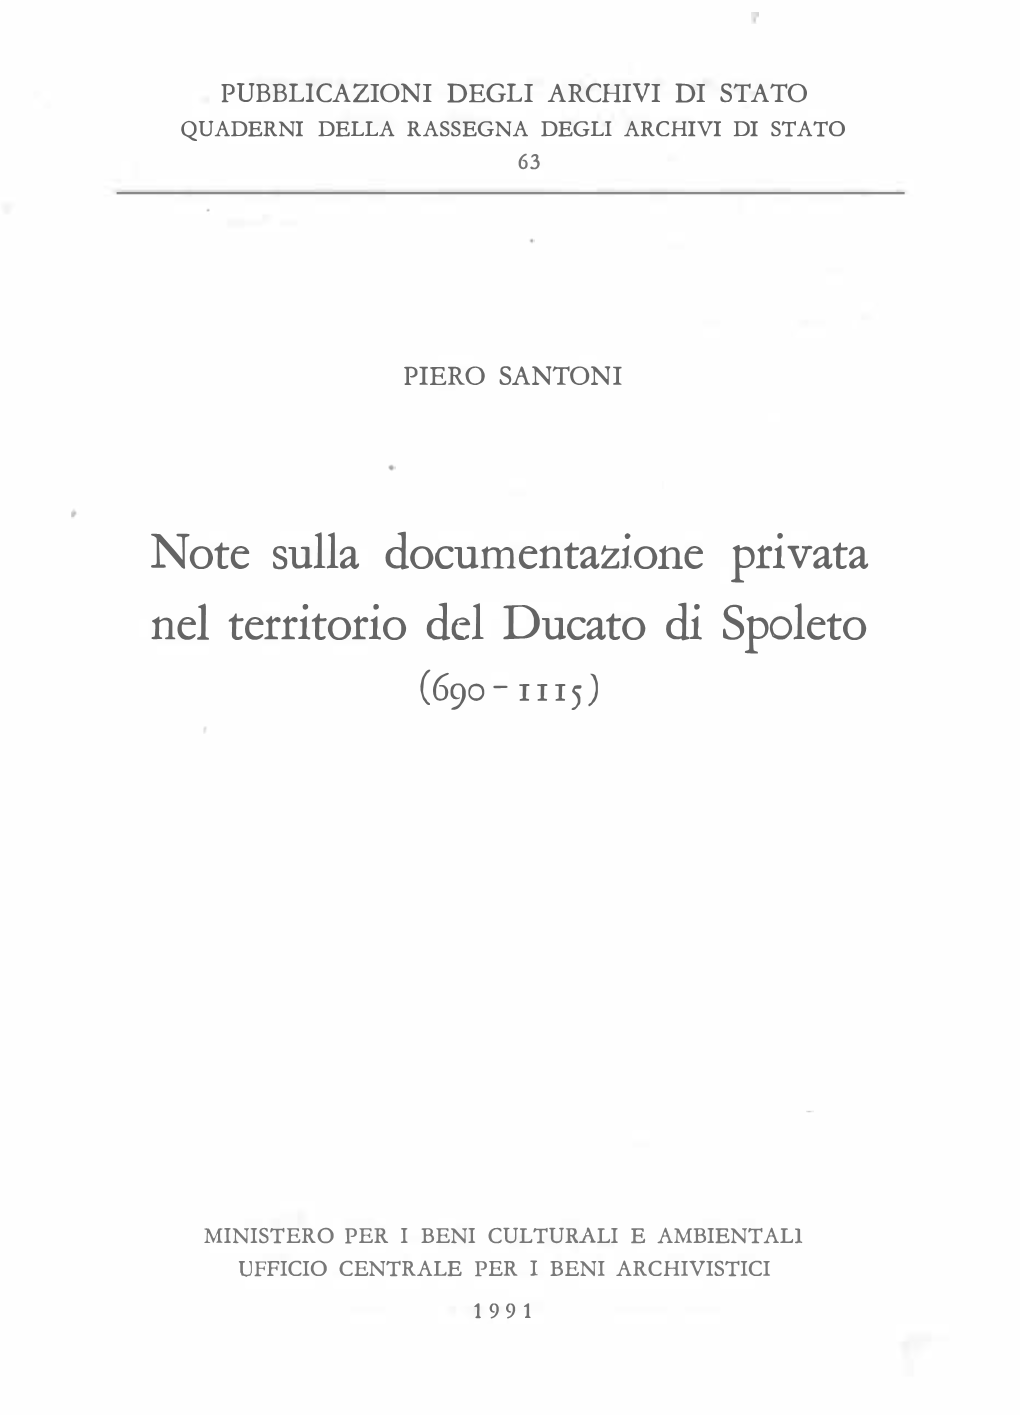 Note Sulla Documentazione Privata Nel Territorio Del Ducato Di Spoleto (690- I I I 5)